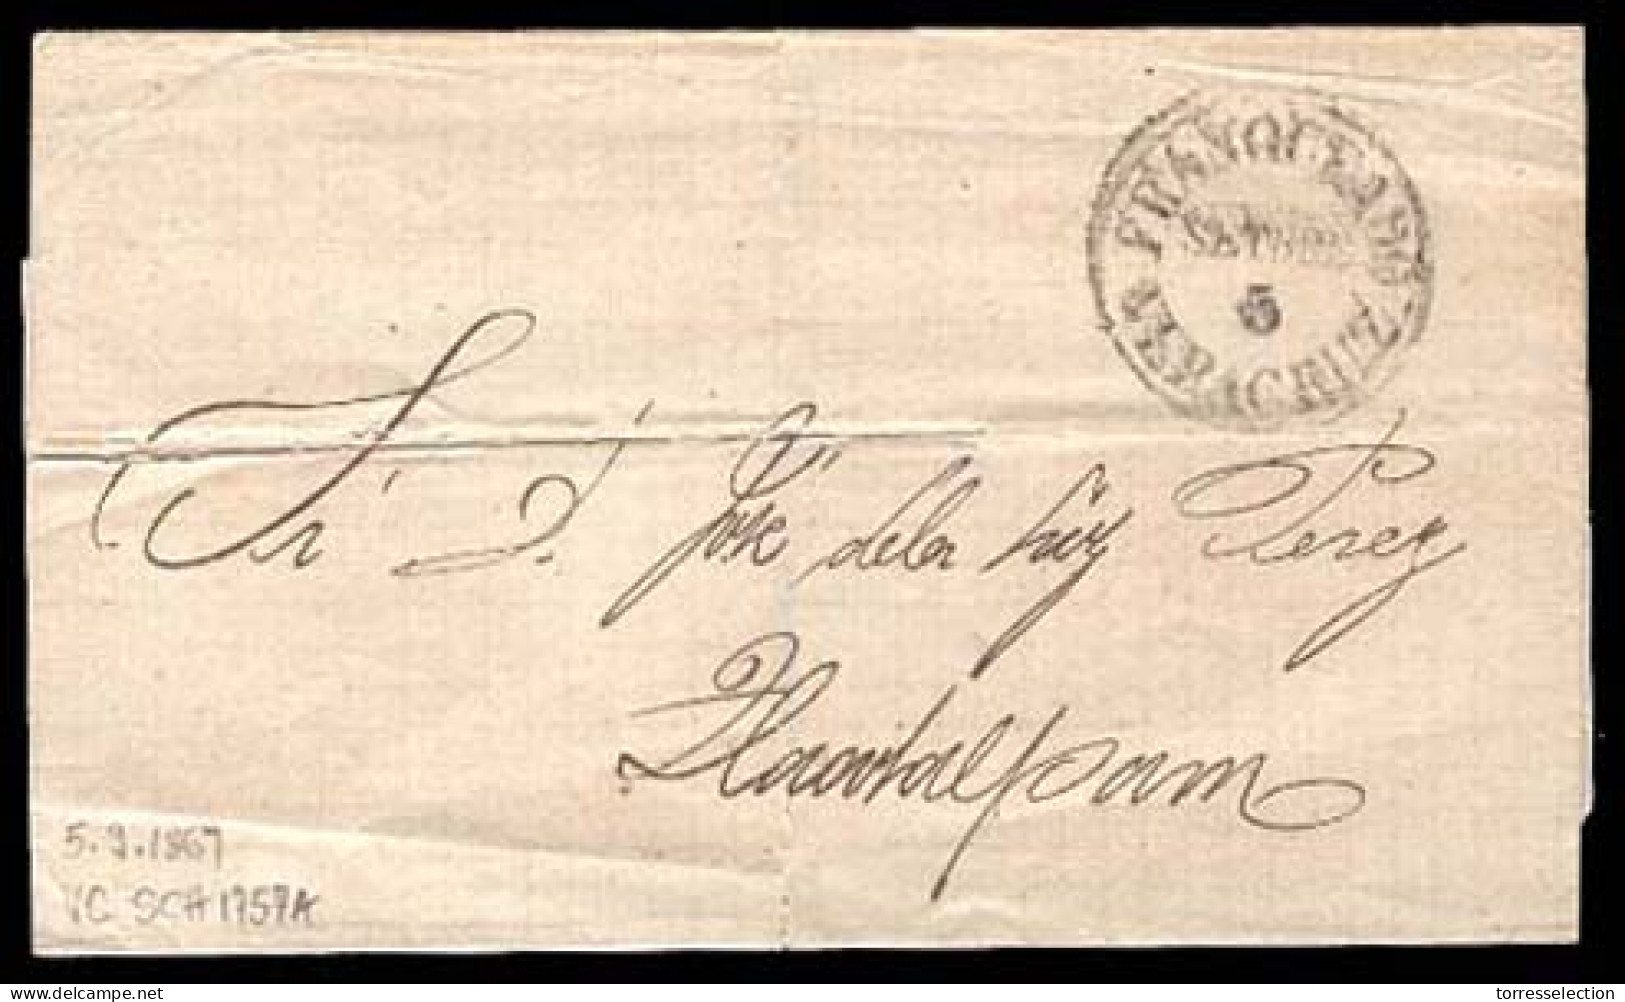 MEXICO - Stampless. 1867 (5 Sept.). Veracruz To Tlacotalpam. PROVISIONAL PERIOD. Stampless E. "Franqueado / Veracruz". C - México